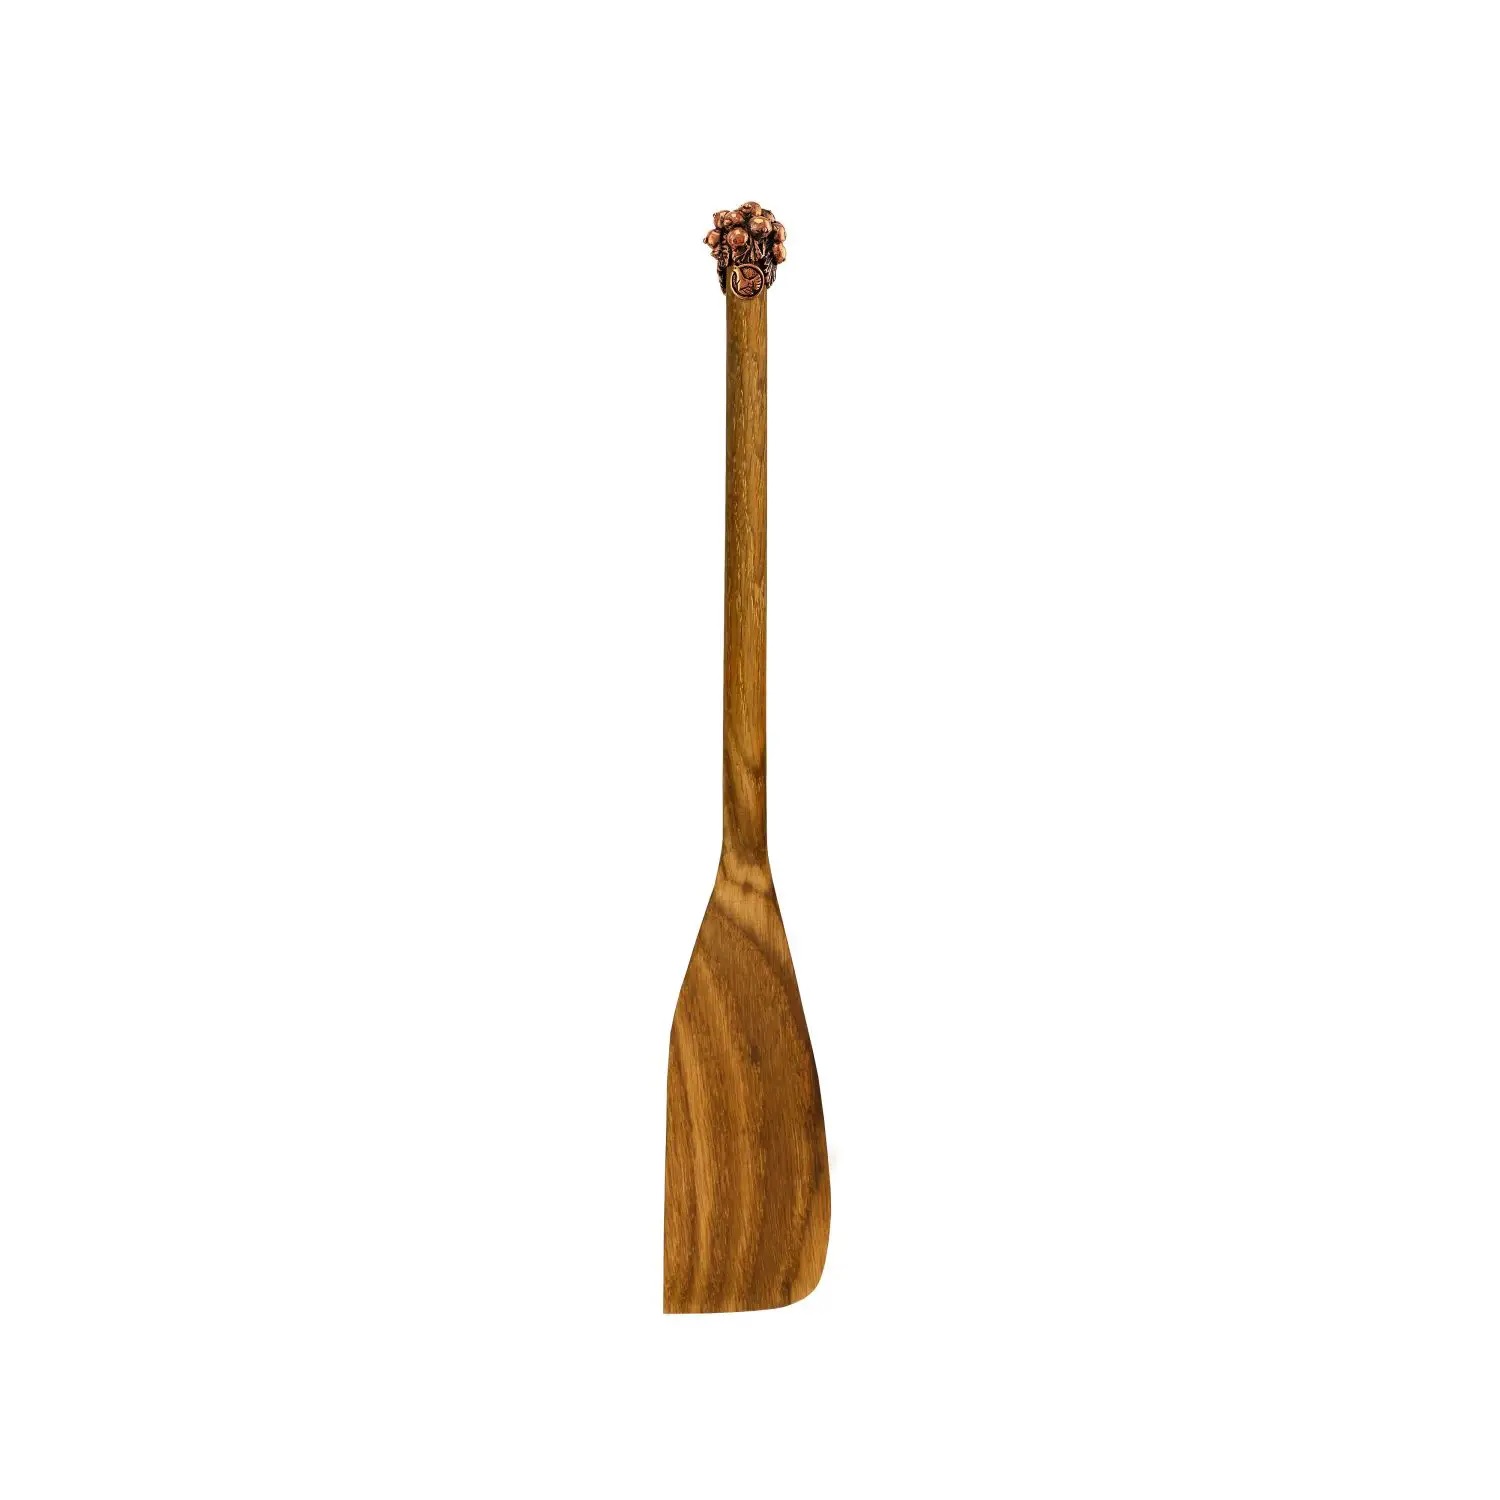 Узкая деревянная лопатка Смородина с медной накладкой 